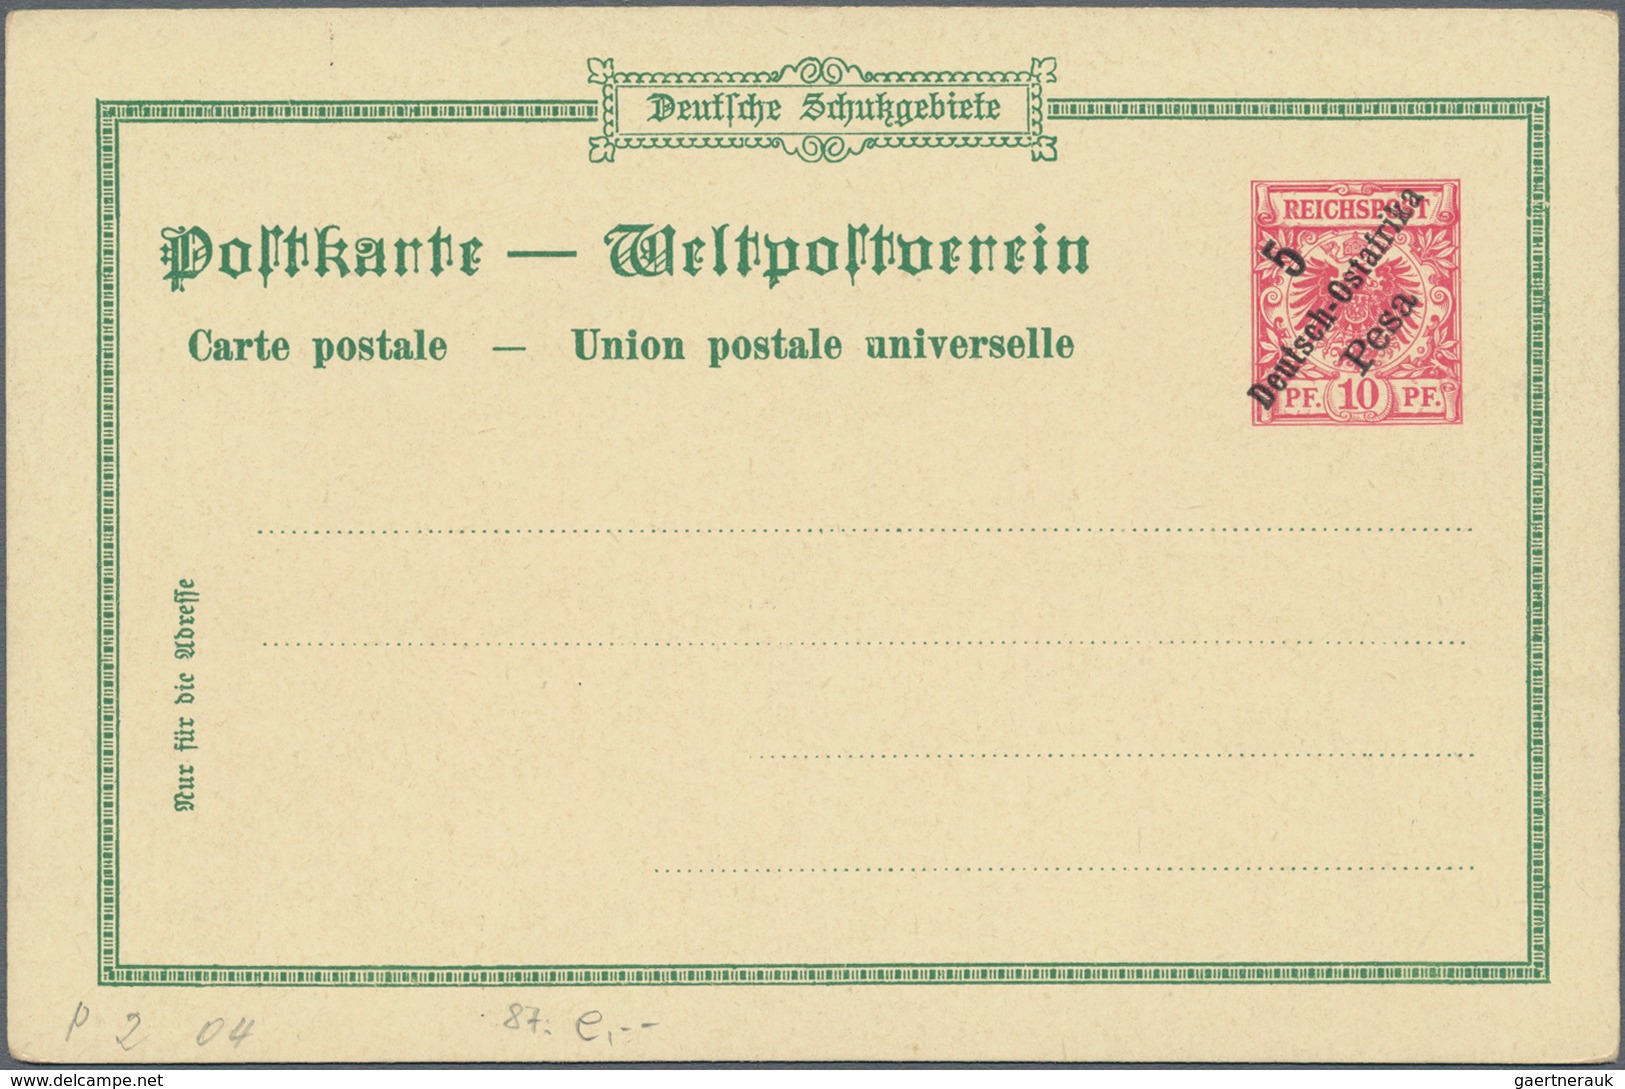 Deutsch-Ostafrika - Ganzsachen: 1898, vier ungebrauchte private Ganzsachenpostkarten Wst. Adler 10 P